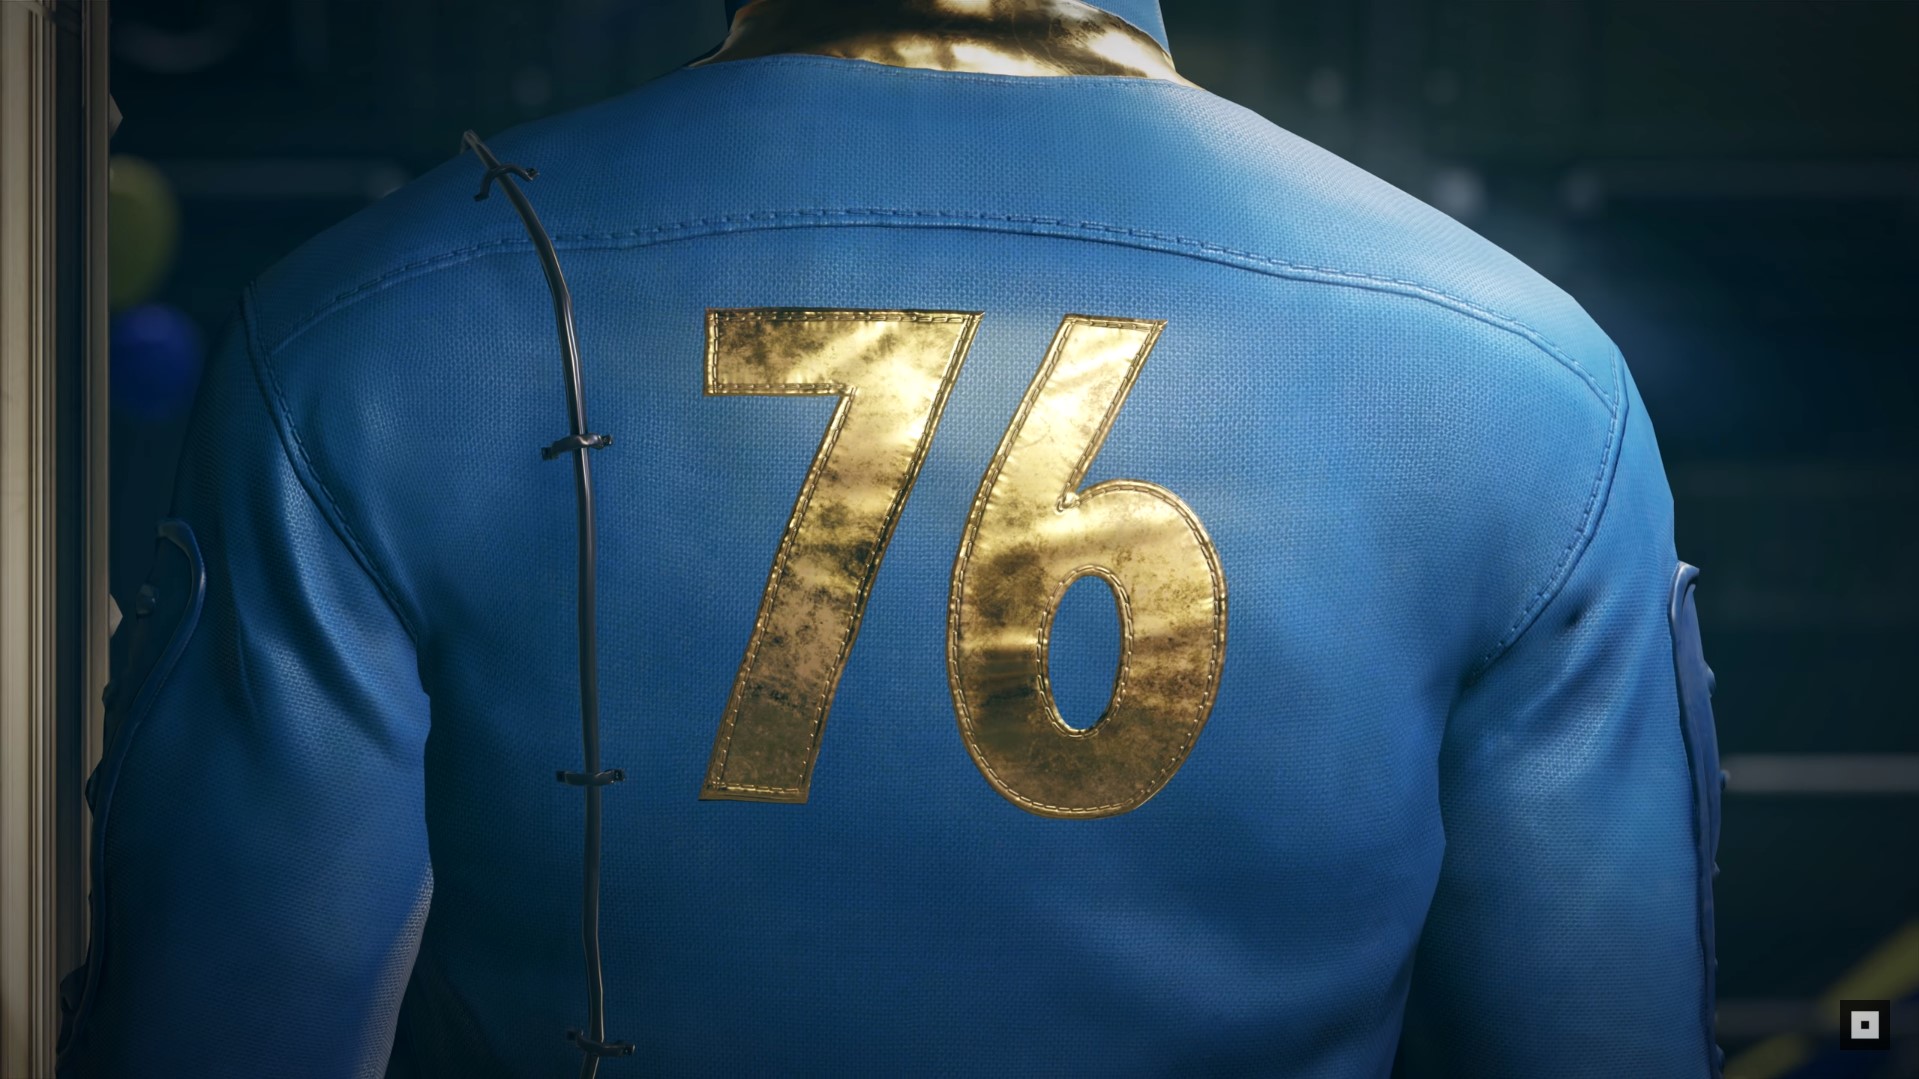 Có tin đồn rằng Fallout 76 sẽ là một tựa game sinh tồn online